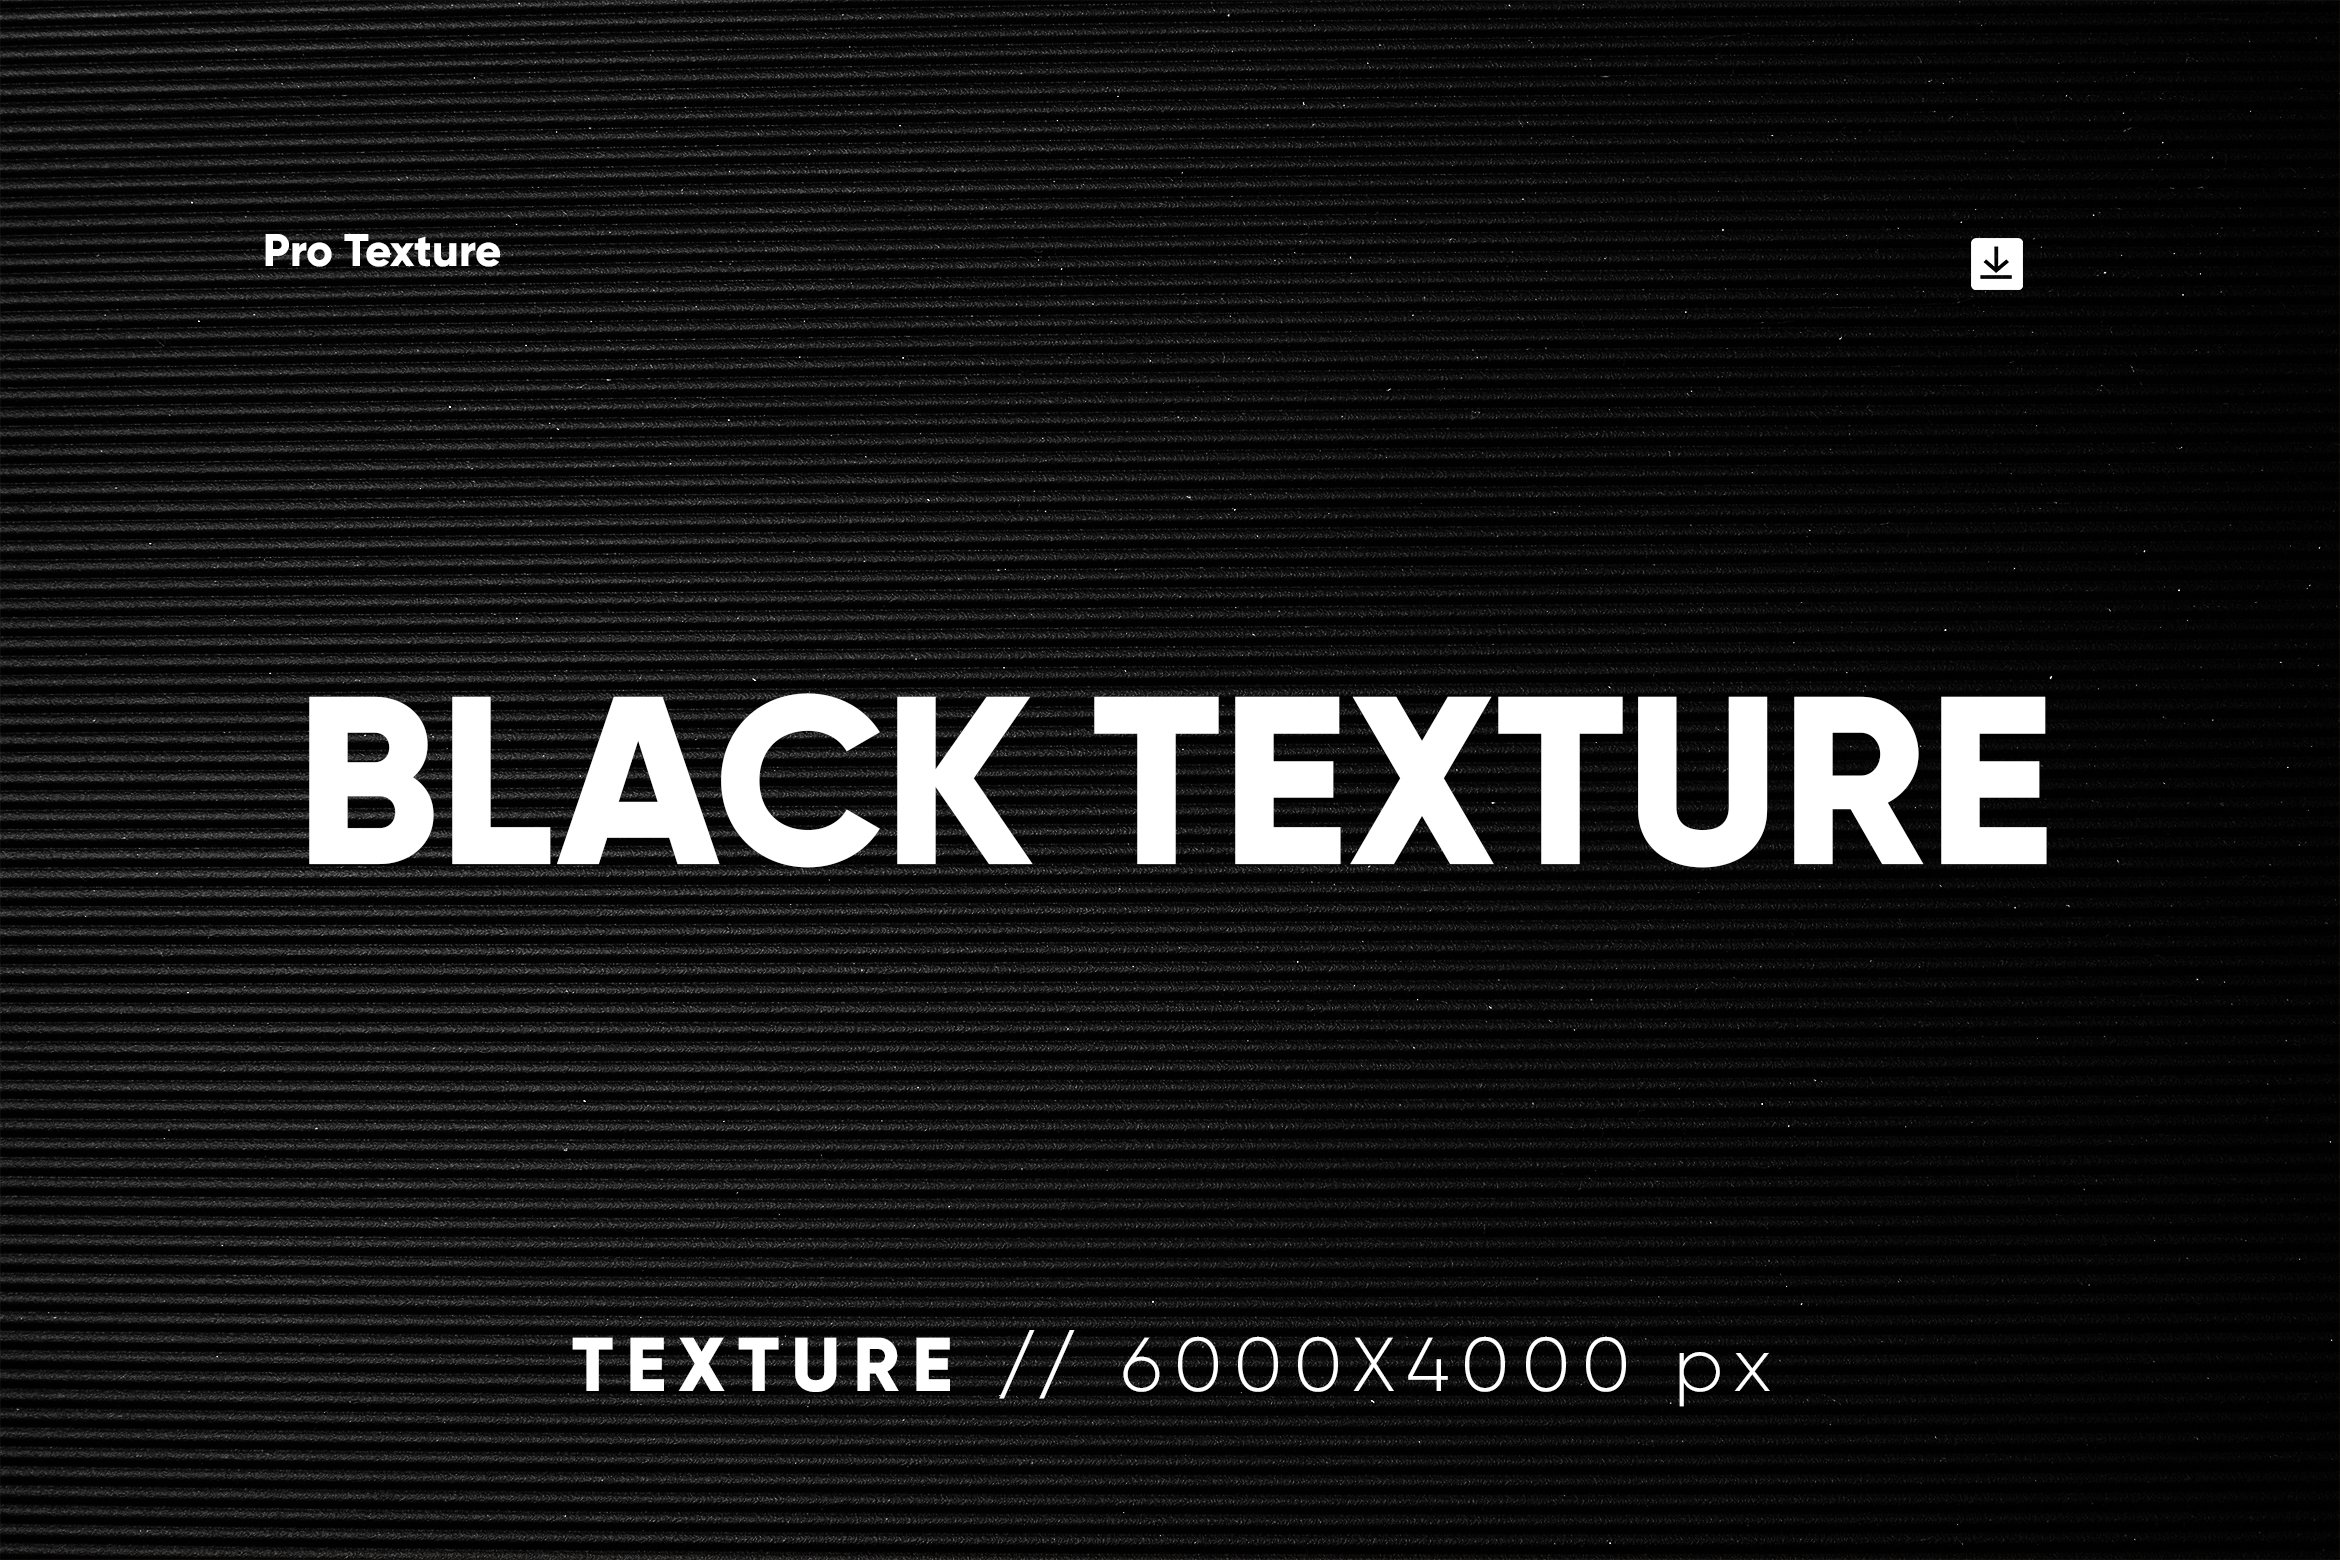 30 Black Textures Bundle HQ cover image.